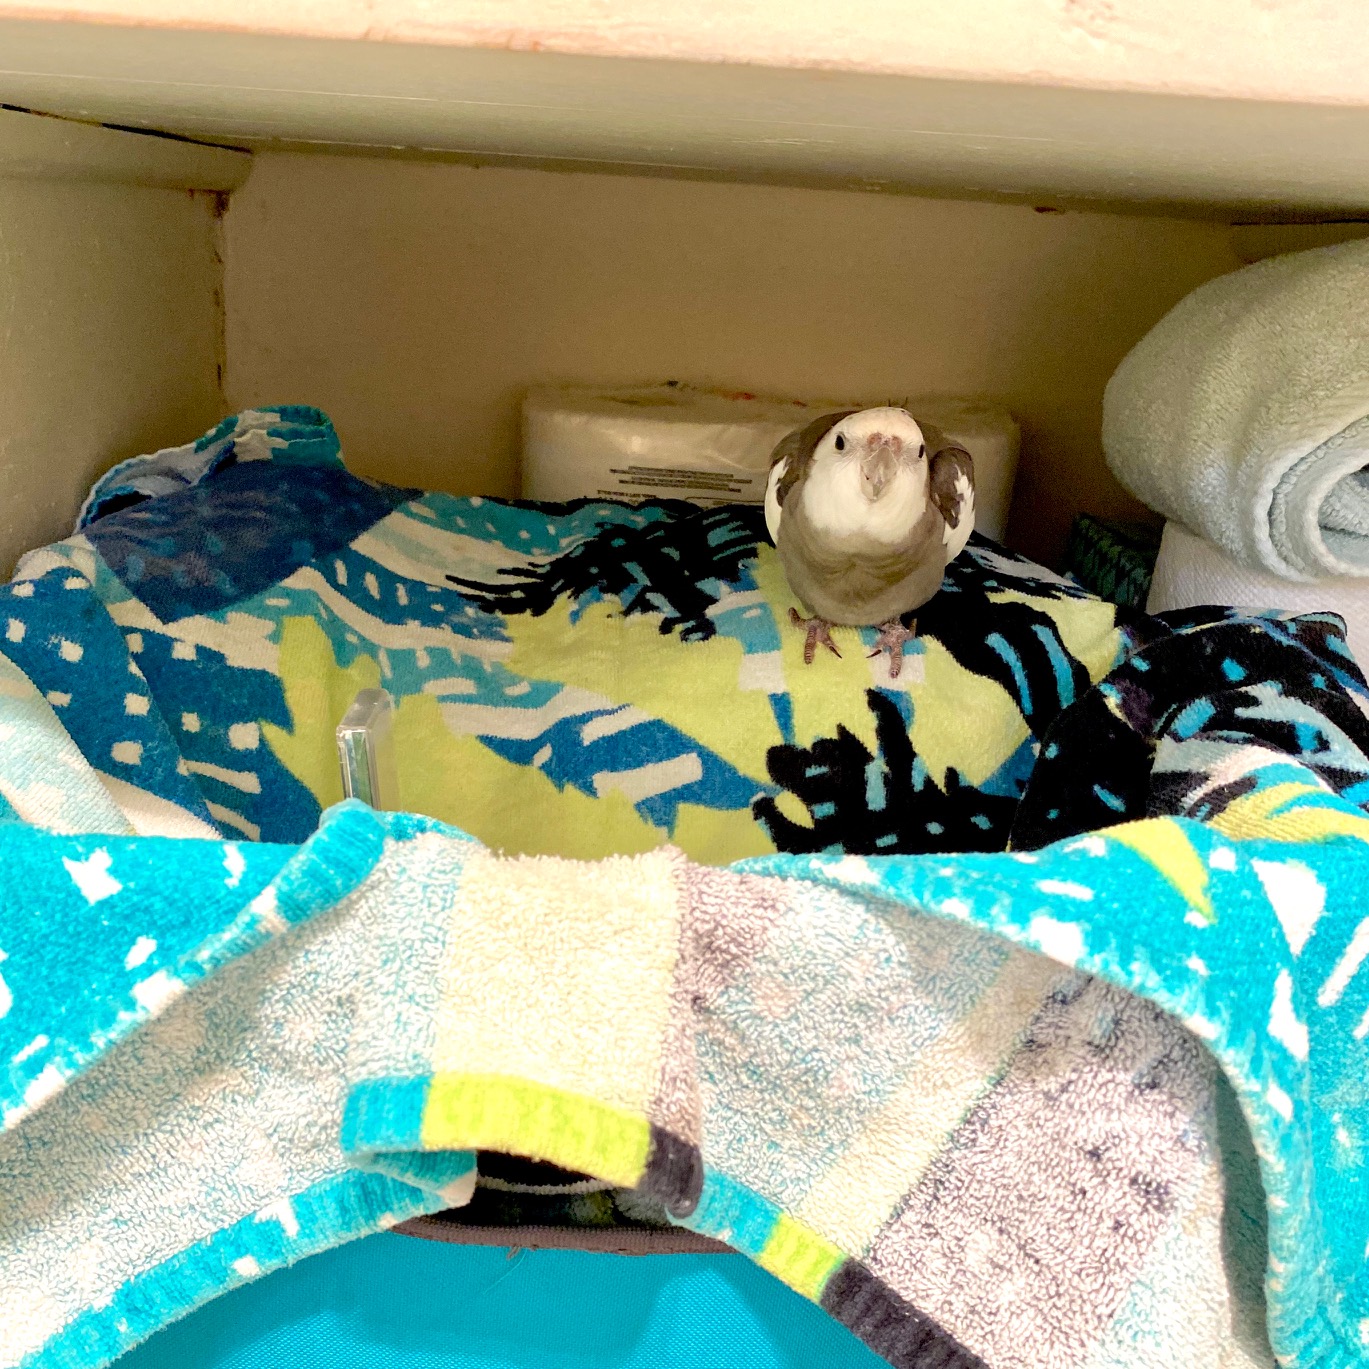 cockatiel nests in towel basket